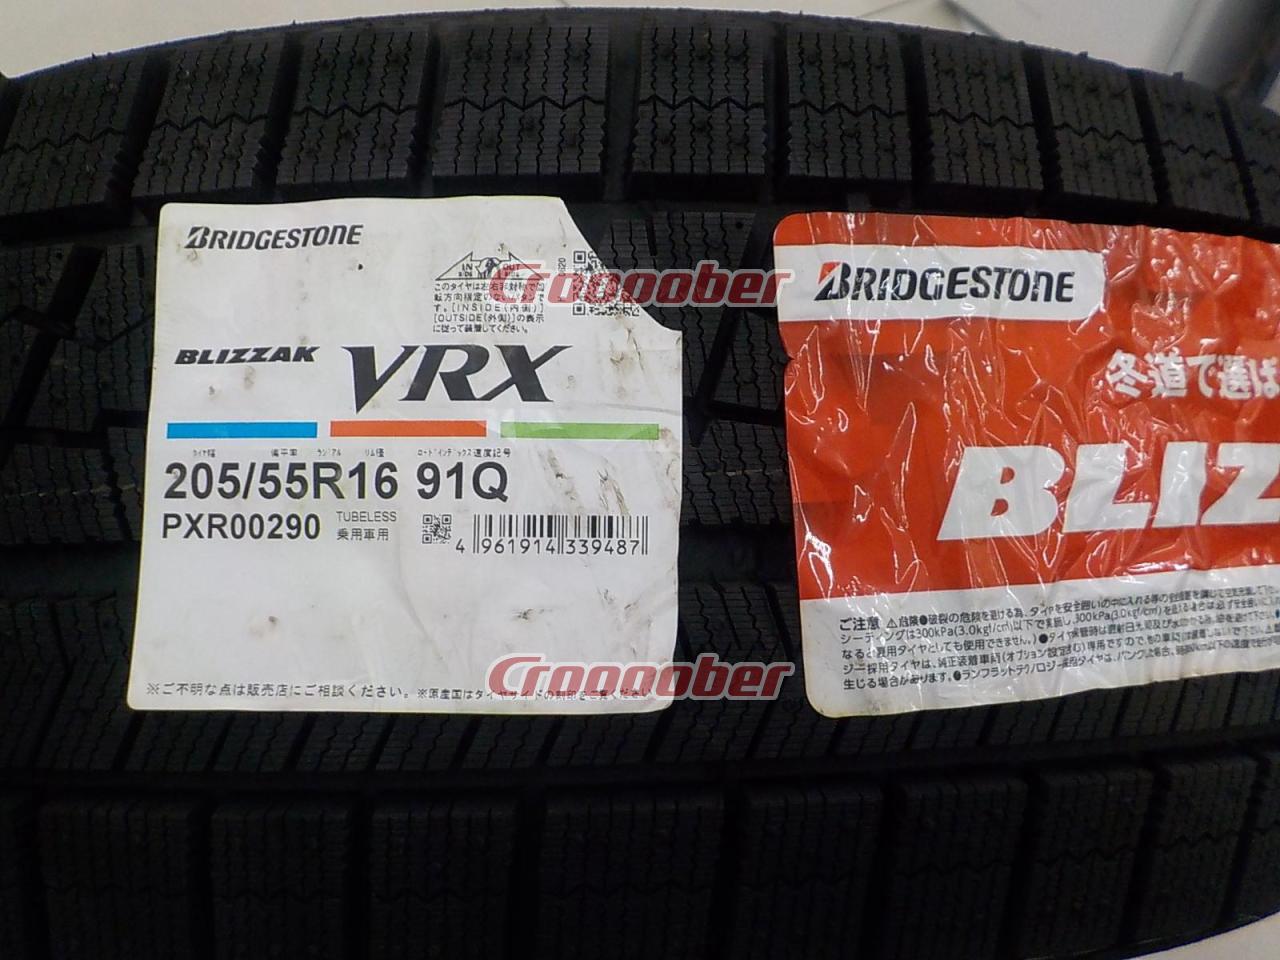 BRIDGESTONE(ブリヂストン) BLIZZAK(ブリザック) VRX スタッドレス/年式落ちの為格安販売/205/55R16/タイヤのみ 4本セット  スタッドレスタイヤ 16インチスタッドレスタイヤパーツの通販なら  Croooober(クルーバー)